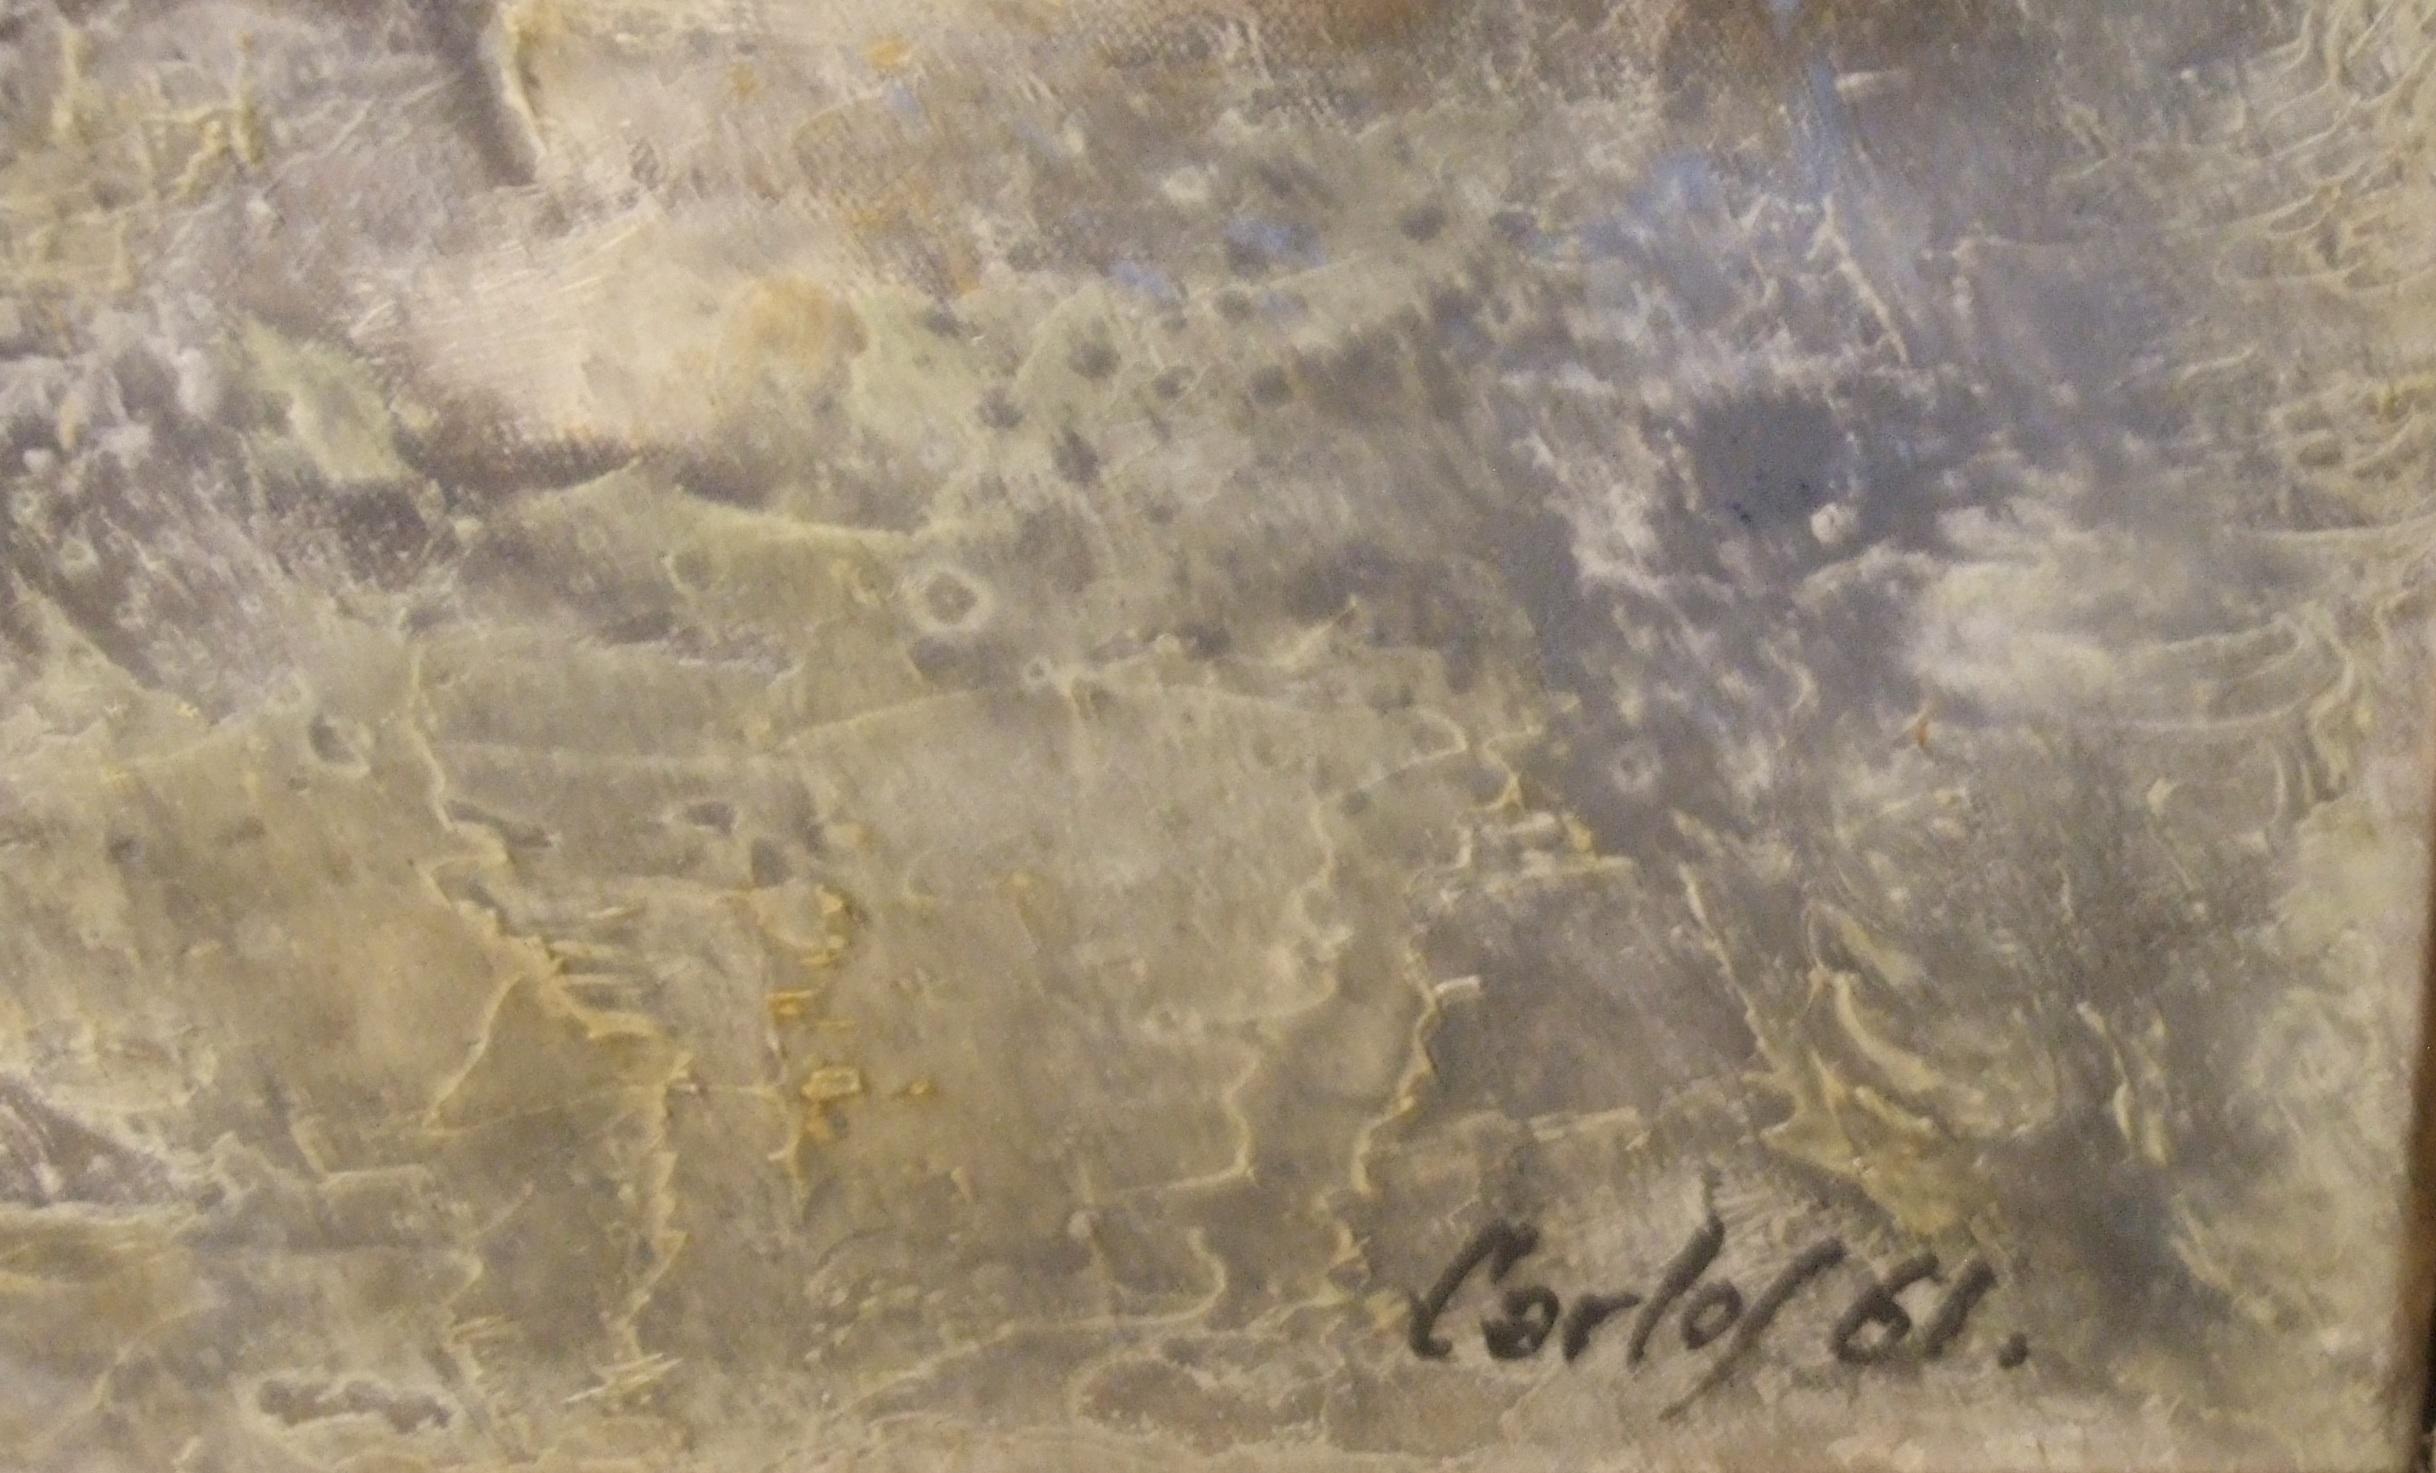 Leinwand 24, 1961 - Öl auf Leinwand, 89x116 cm. – Painting von Carlos Carnero